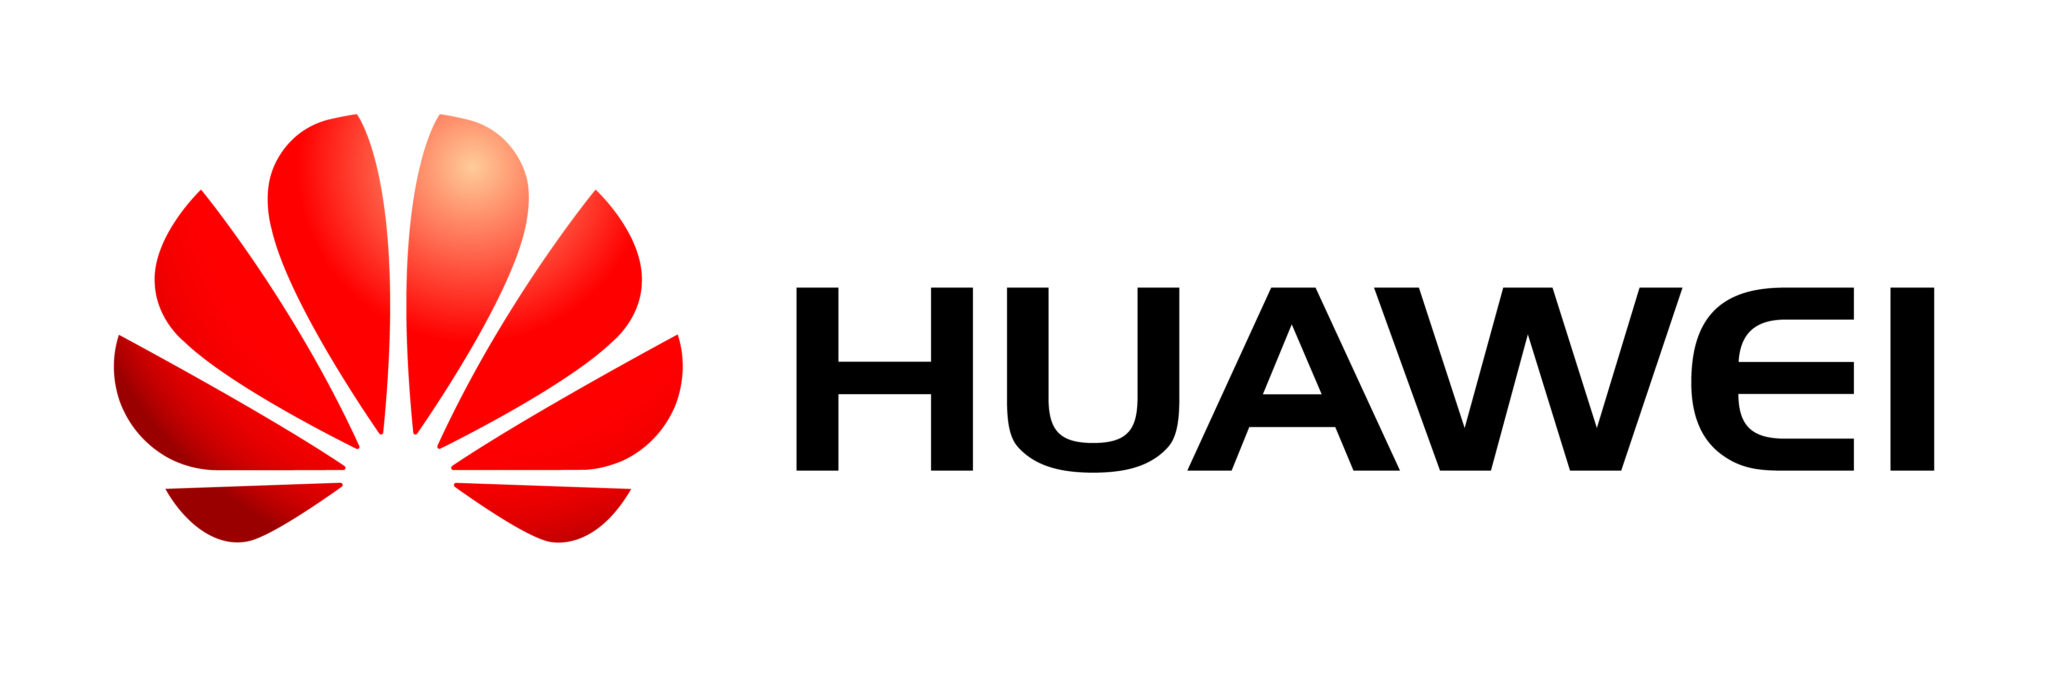 huawei_logo-2